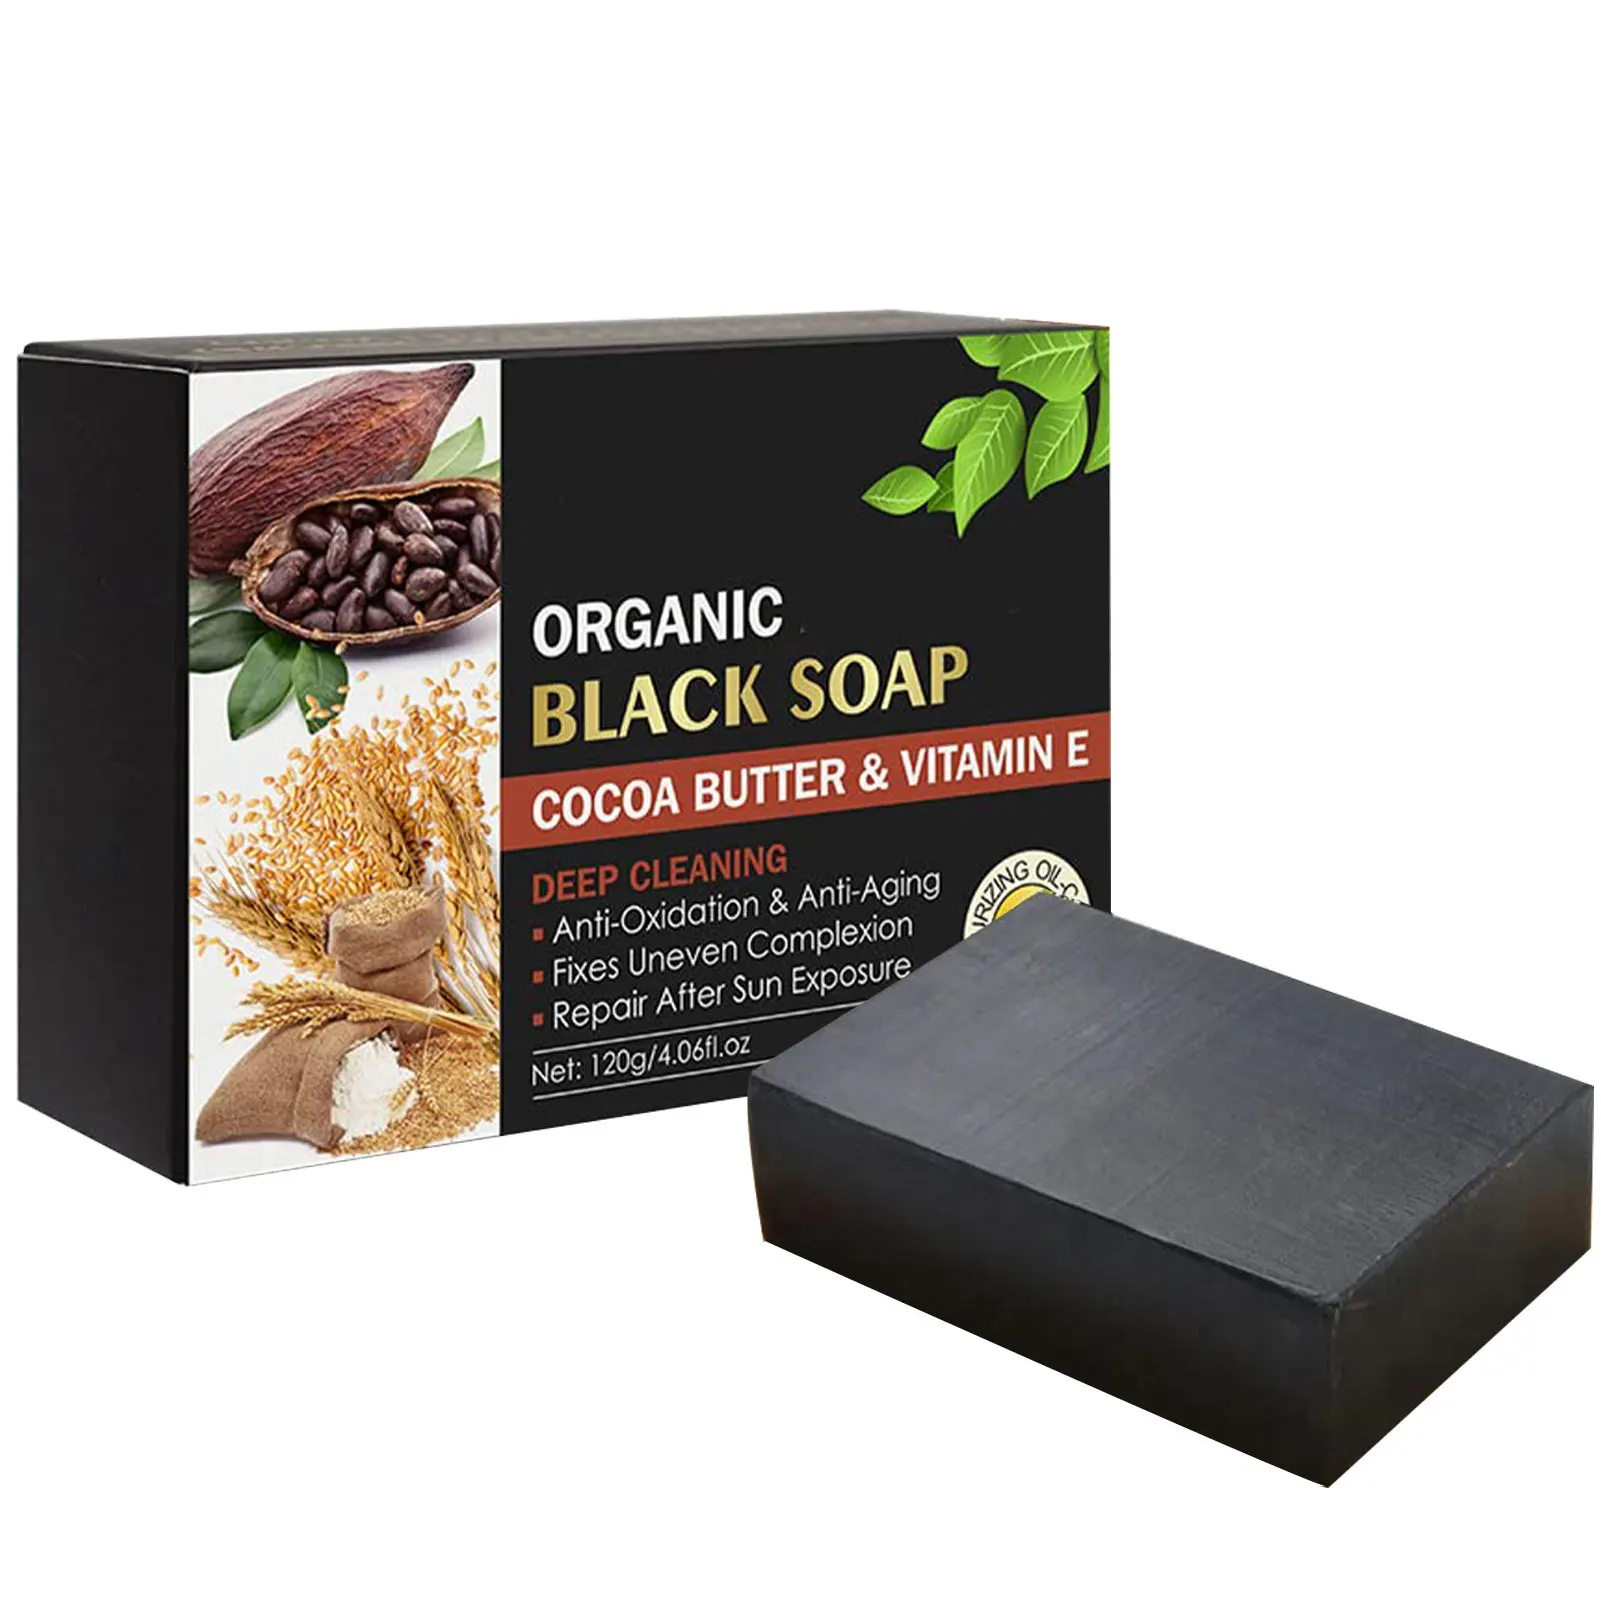 

Soap Bar Black Cocoa Butter Blackhead Black Soap With Vitamin E Bubbly Rich Skin Oil Control Soap For All Skin Types Face Body